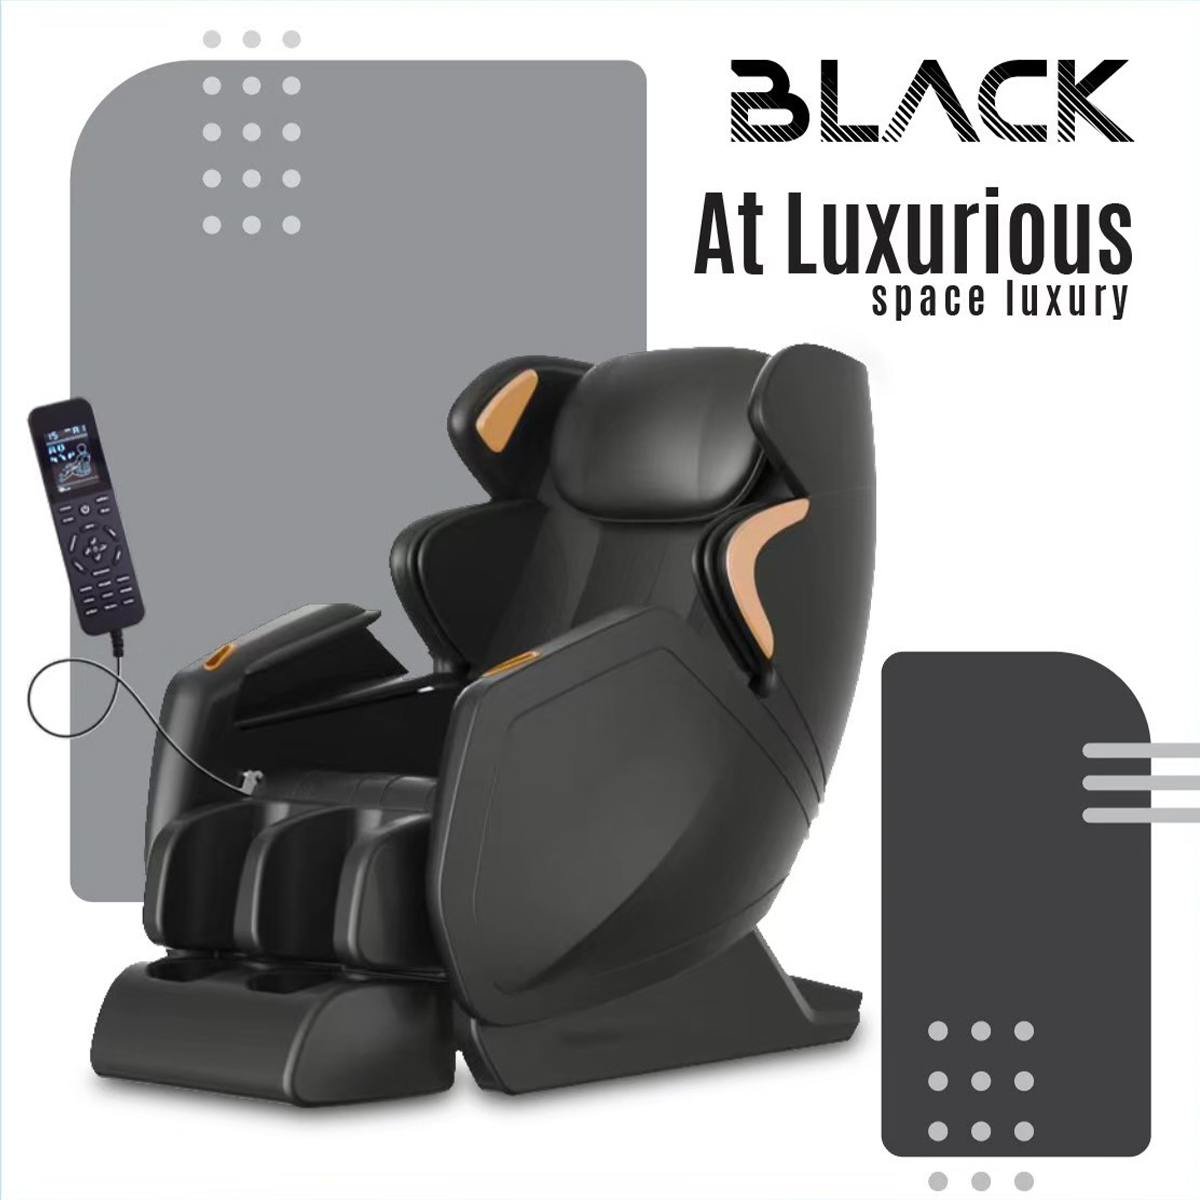 เก้าอี้นวดไฟฟ้า AT Luxurious สี BLACK